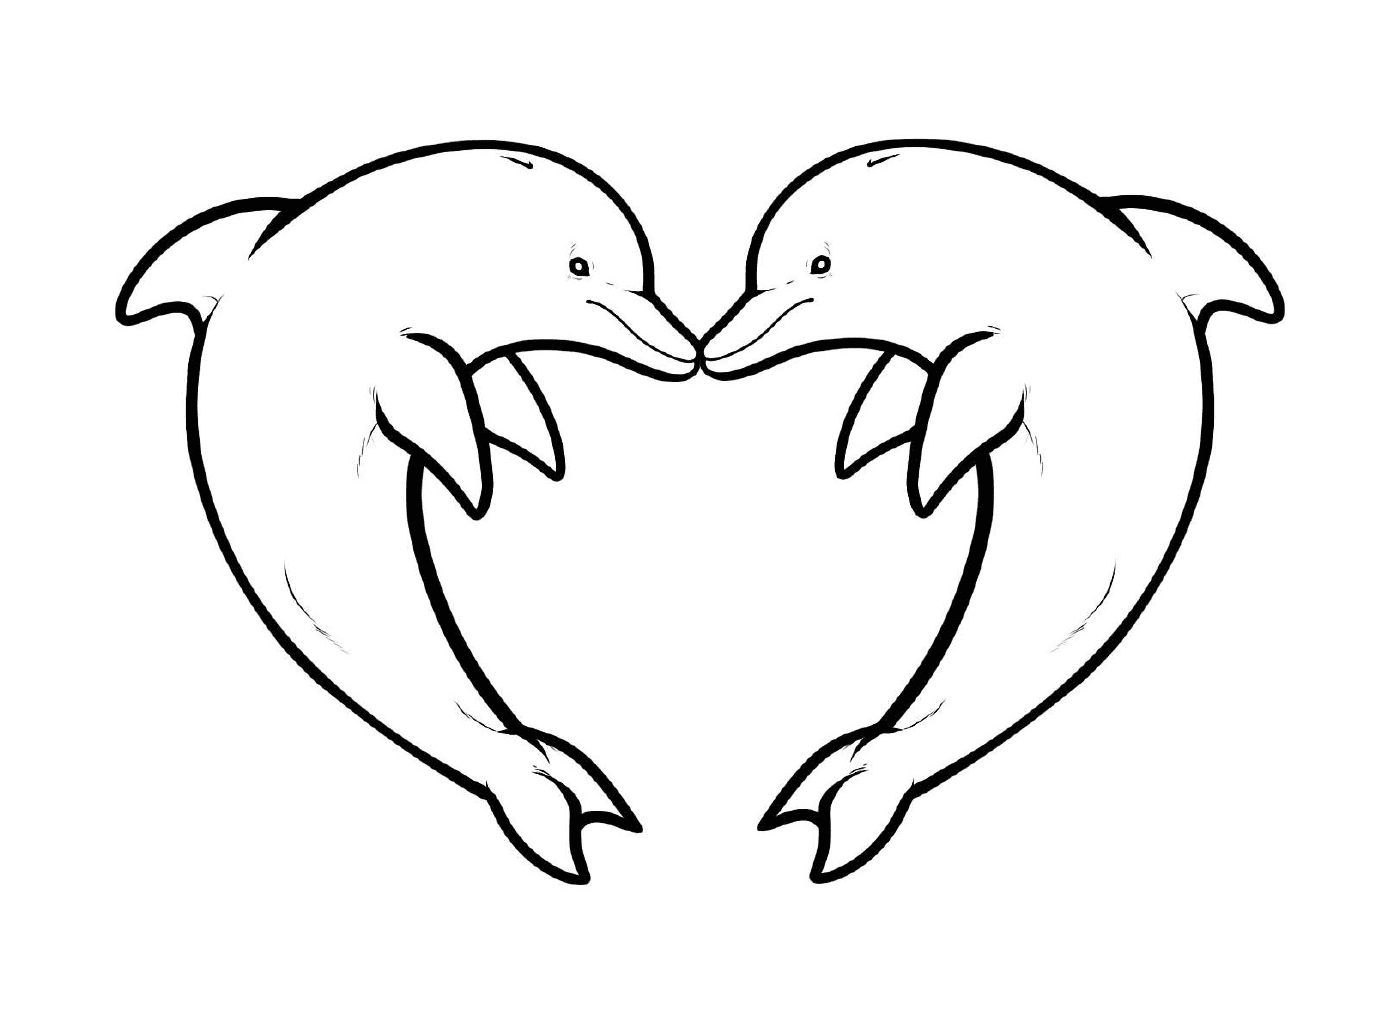  Два дельфина образуют сердце 